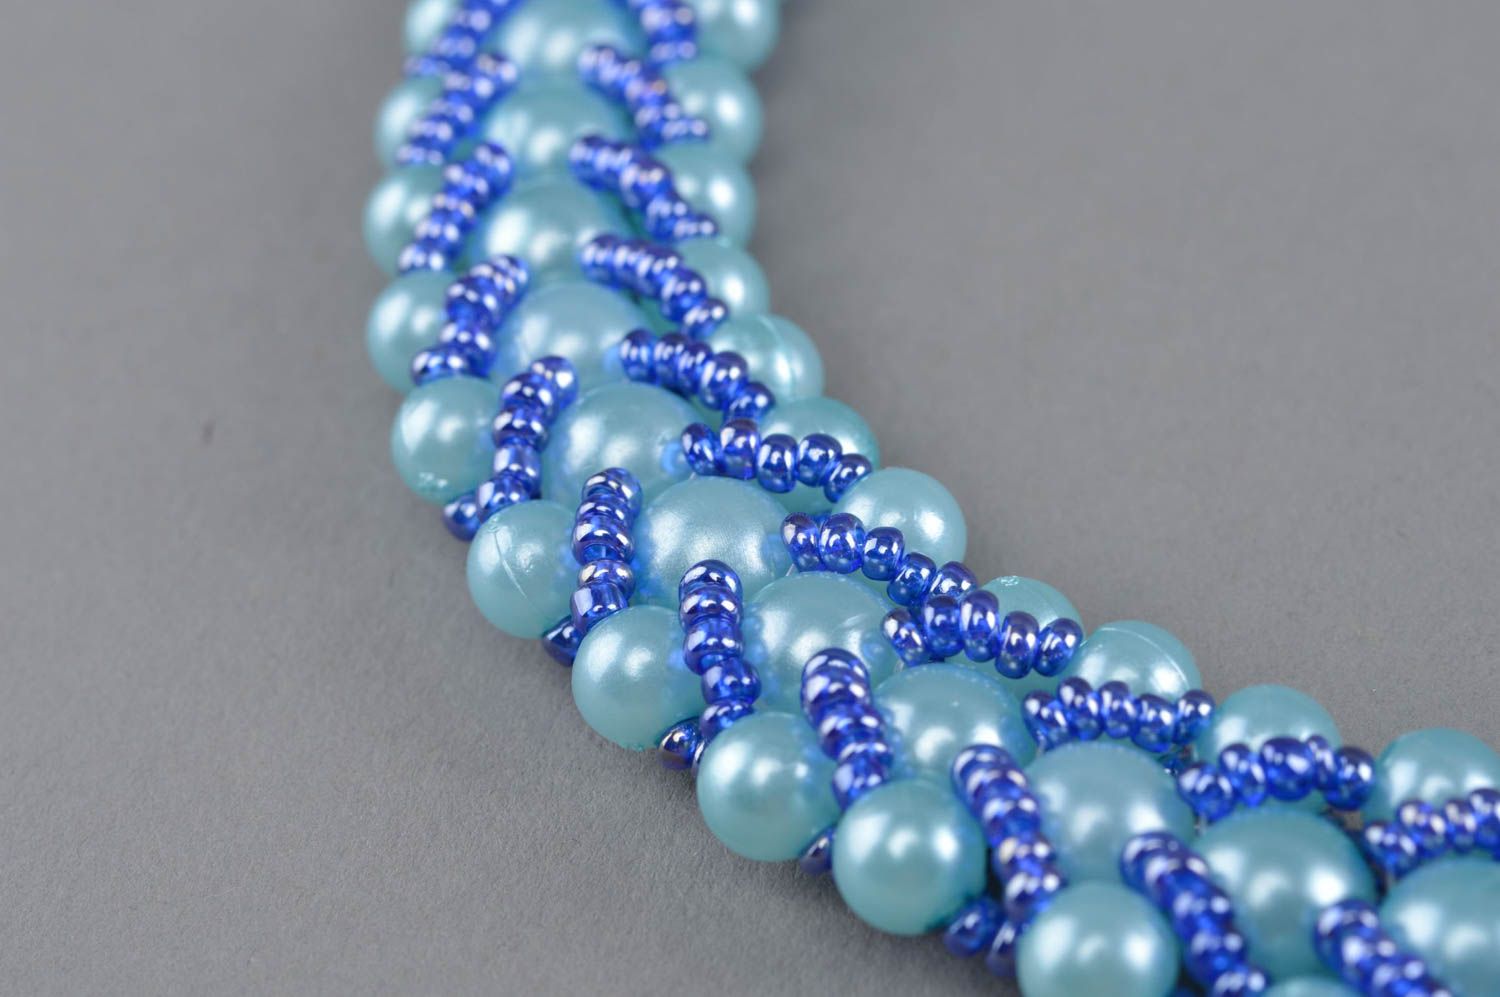 Ожерелье из бисера и бусин ручной работы в голубых тонах красивое авторское фото 3